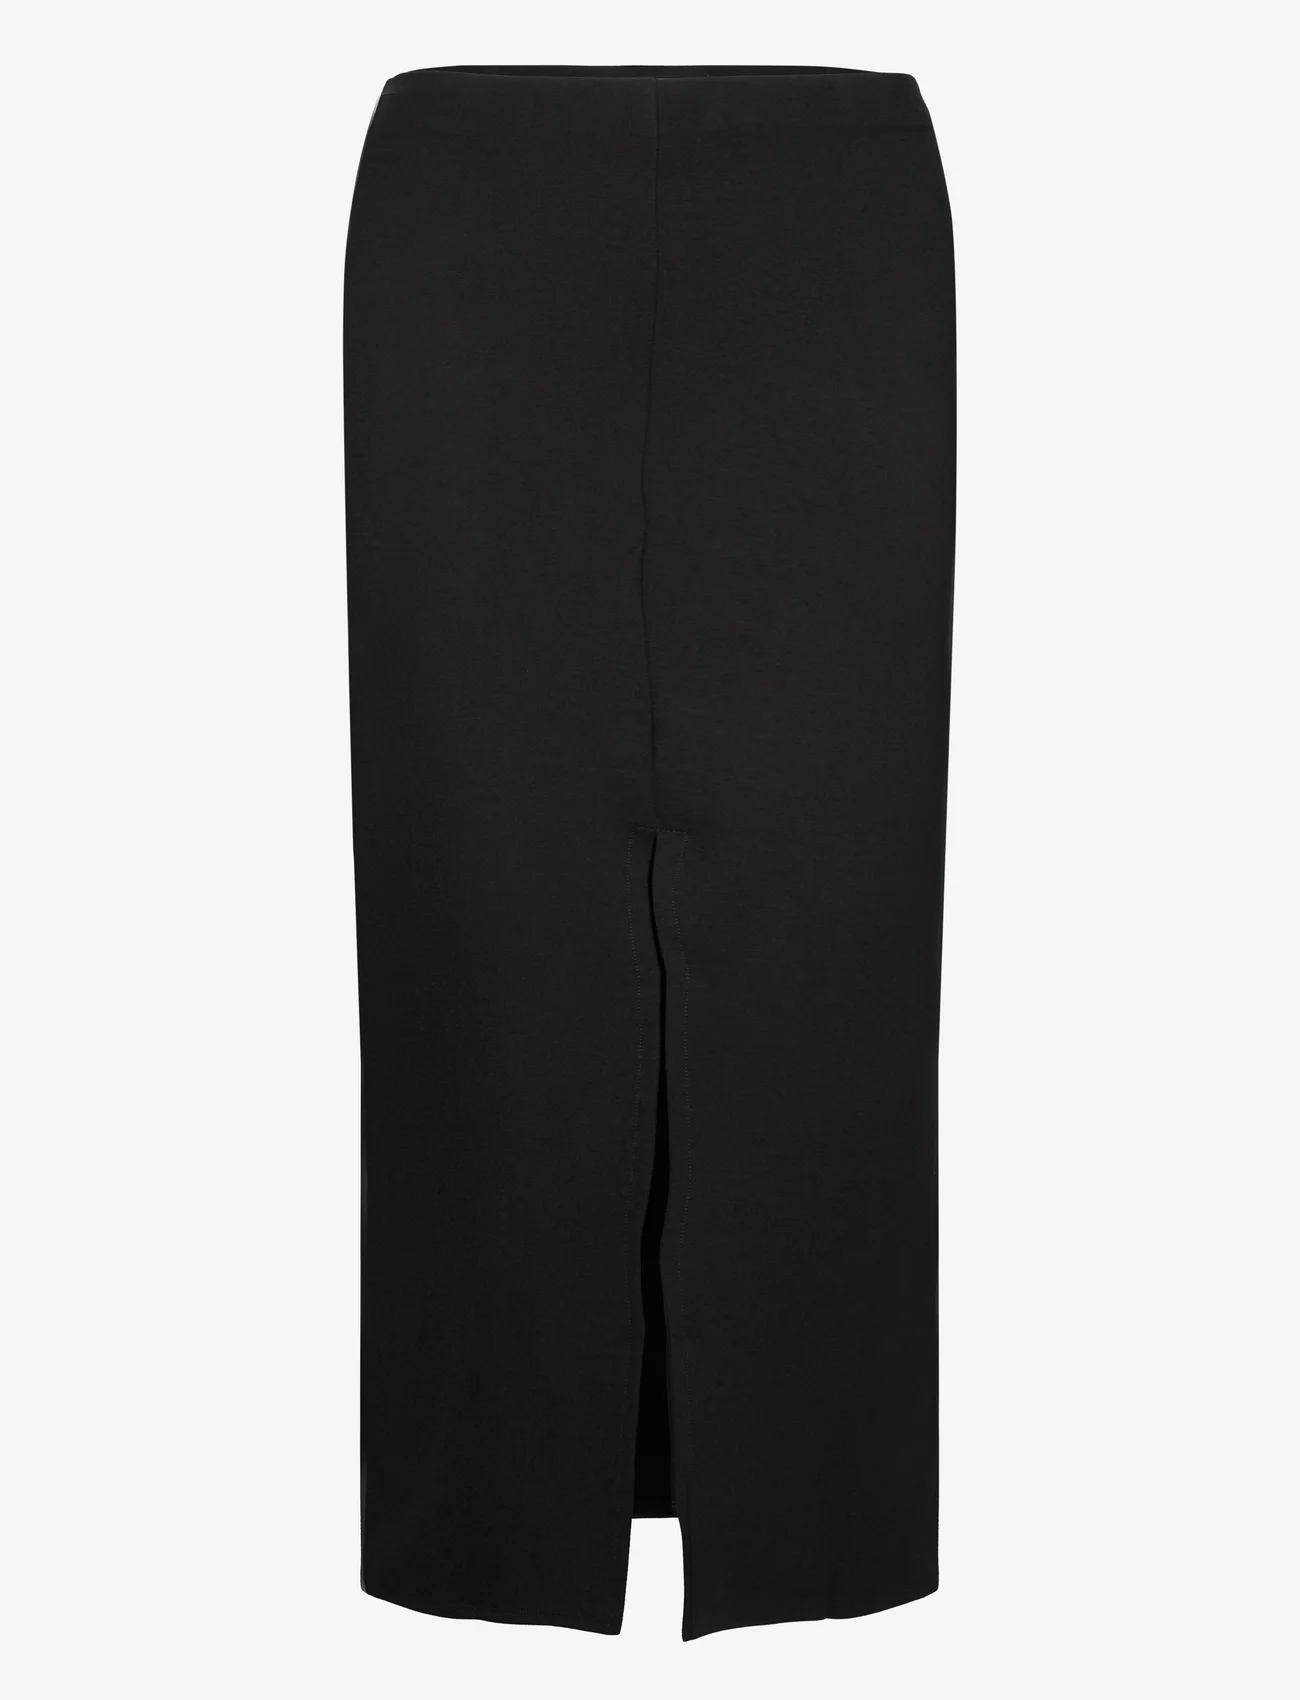 Mango - Midi-skirt with front slit - laveste priser - black - 0